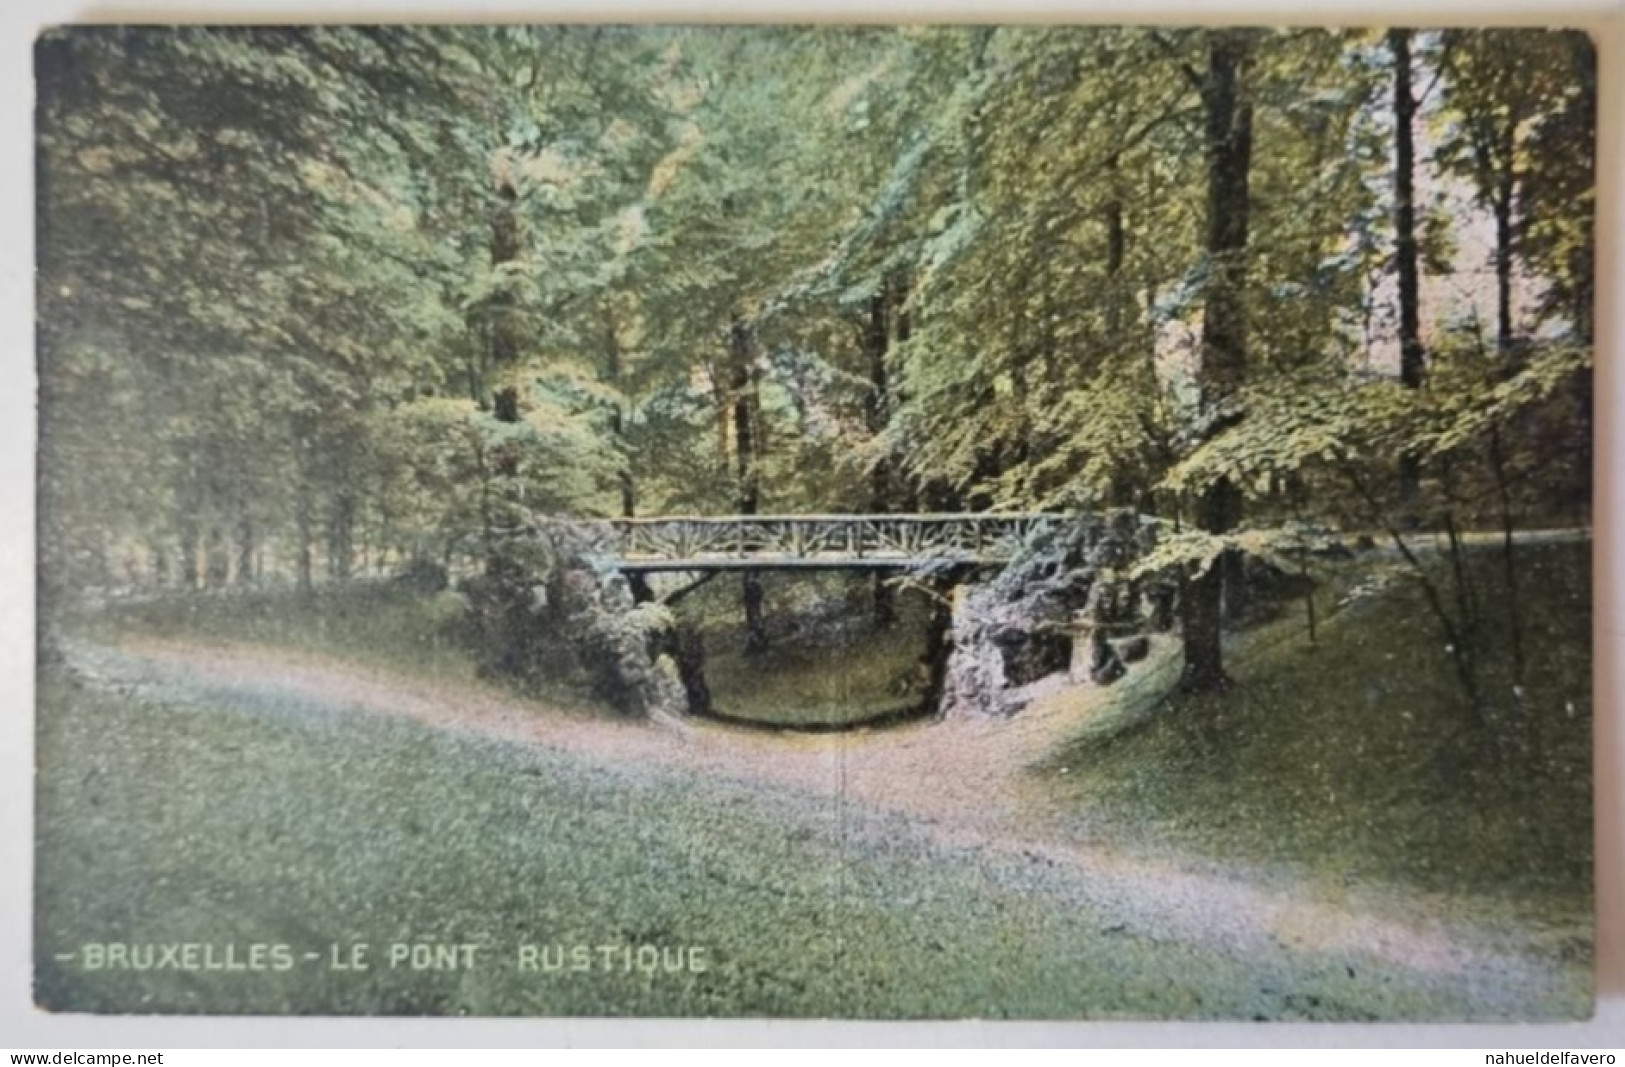 Carte Postale Non Circulée - BELGIQUE, BRUXELLES, Le Pont - RUSTIQUE - Forêts, Parcs, Jardins